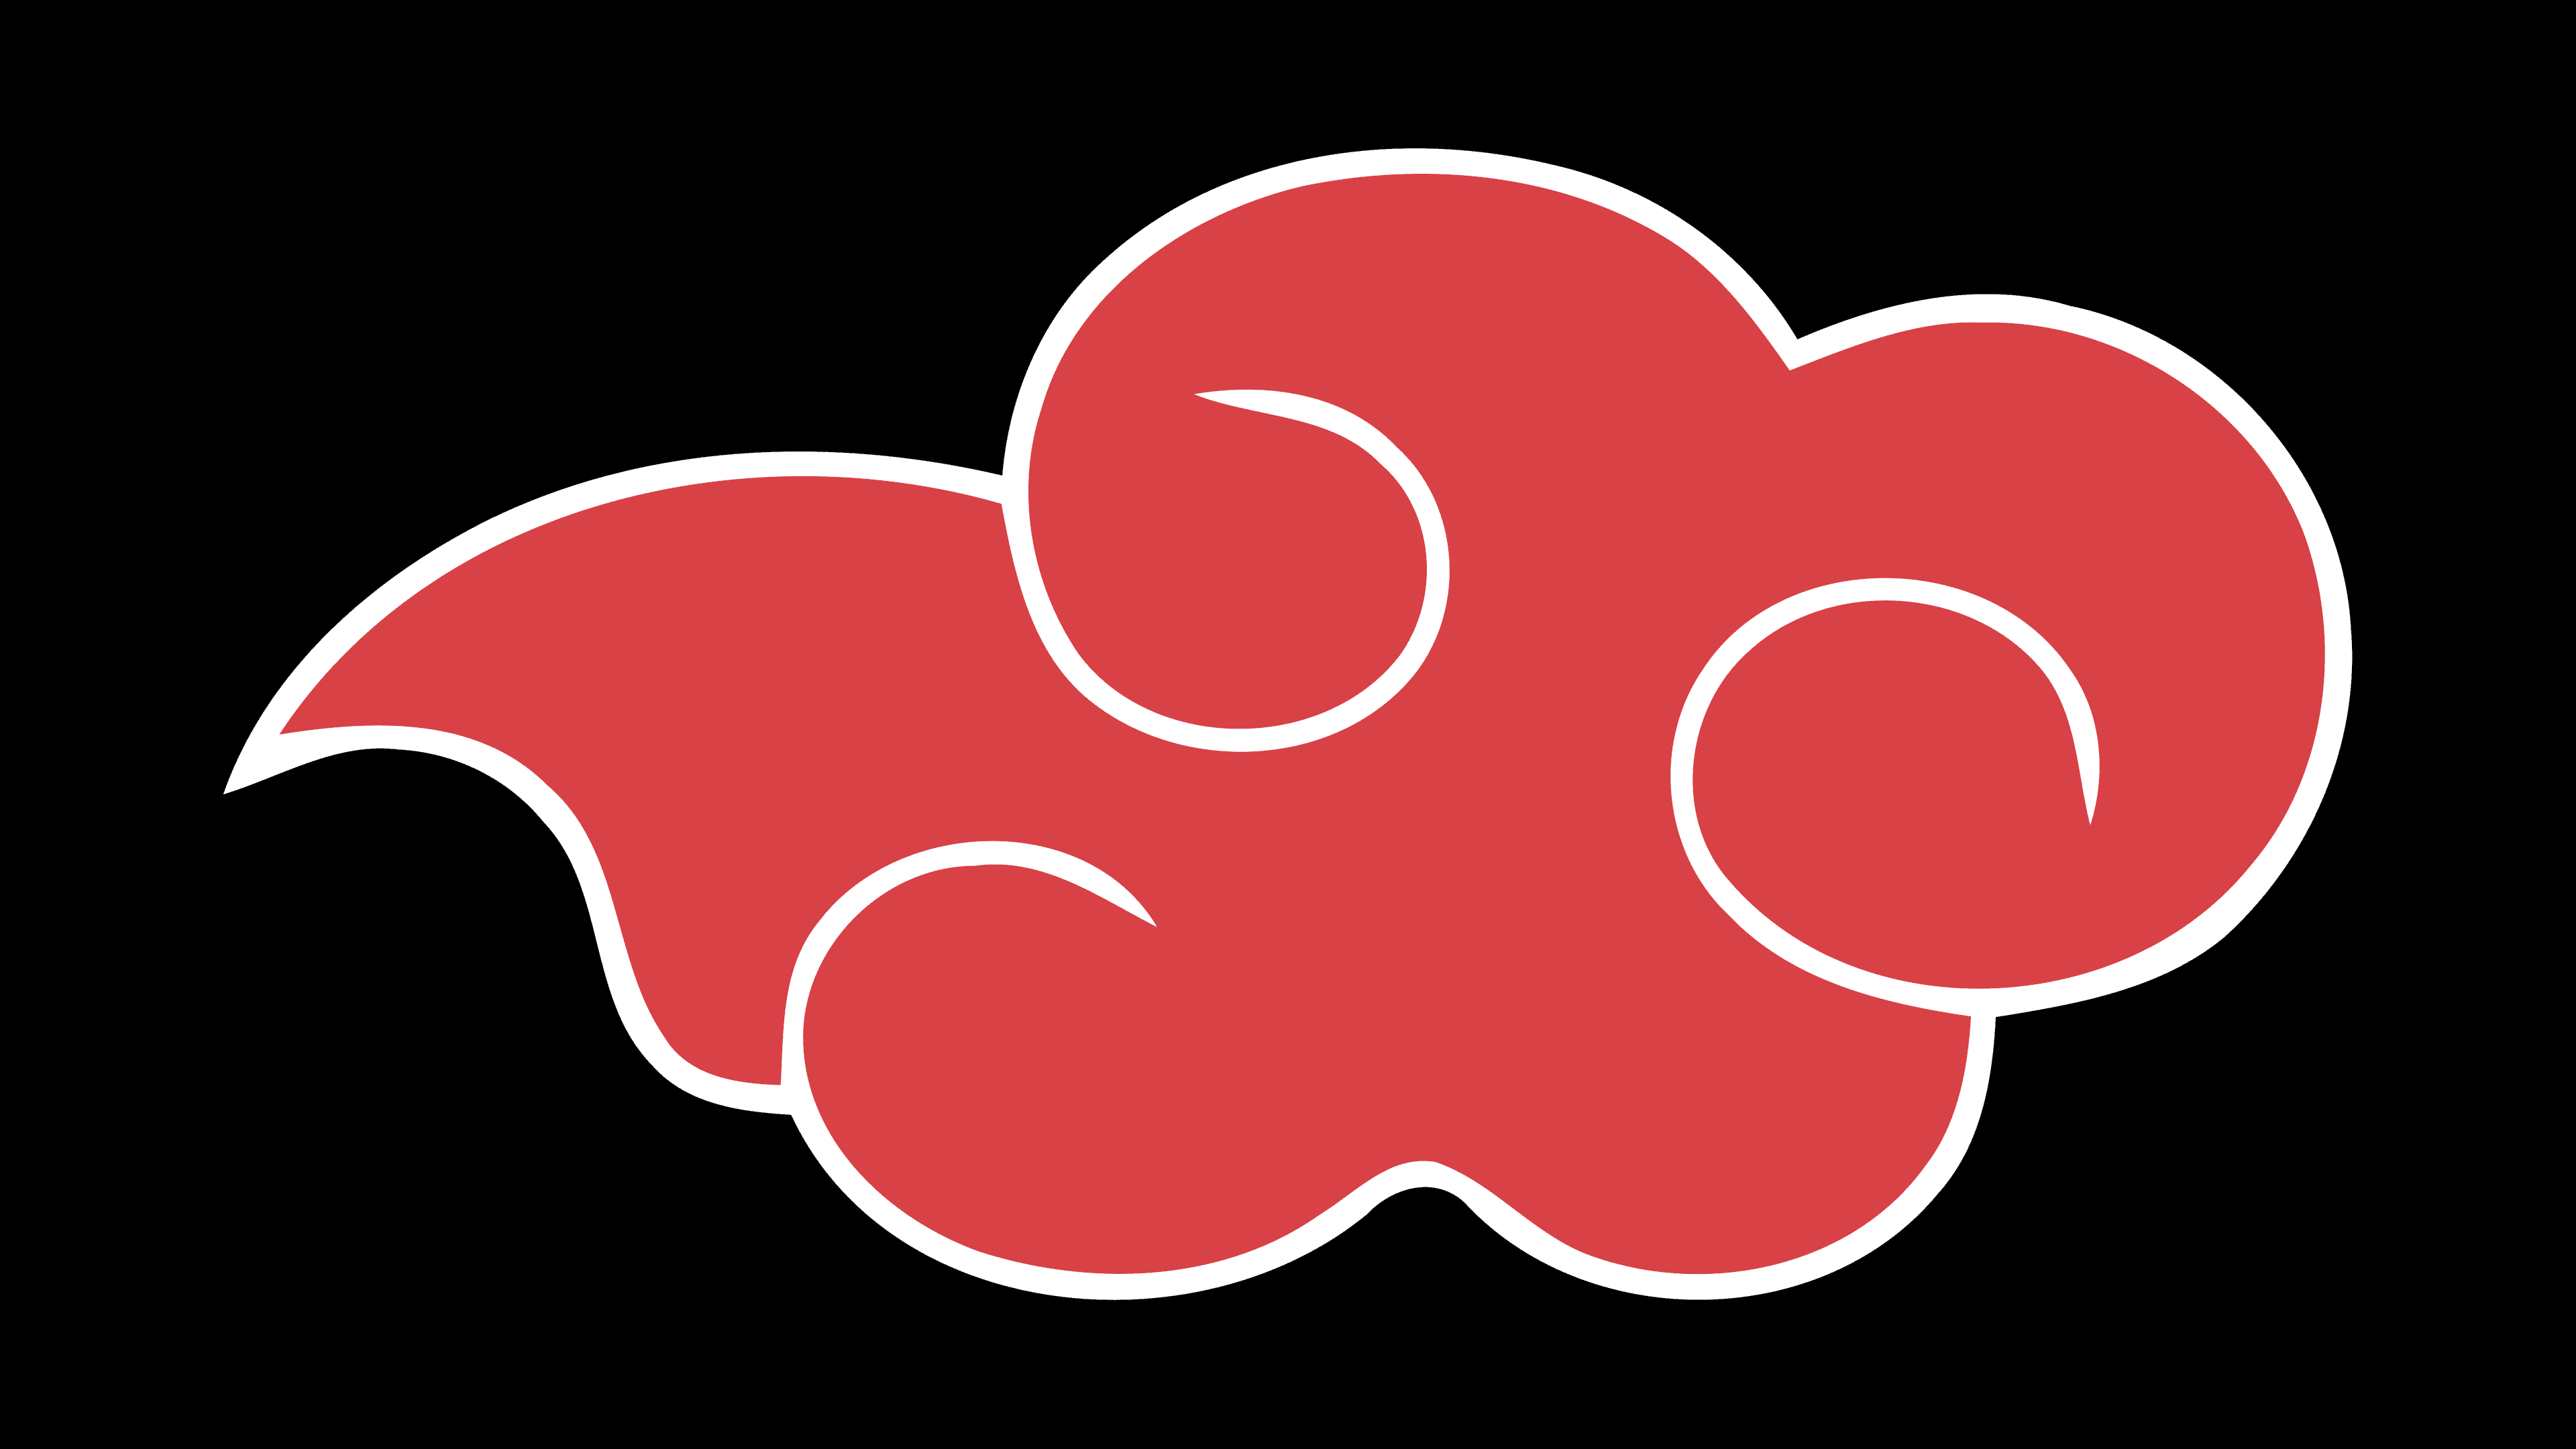 Akatsuki Logo Download png